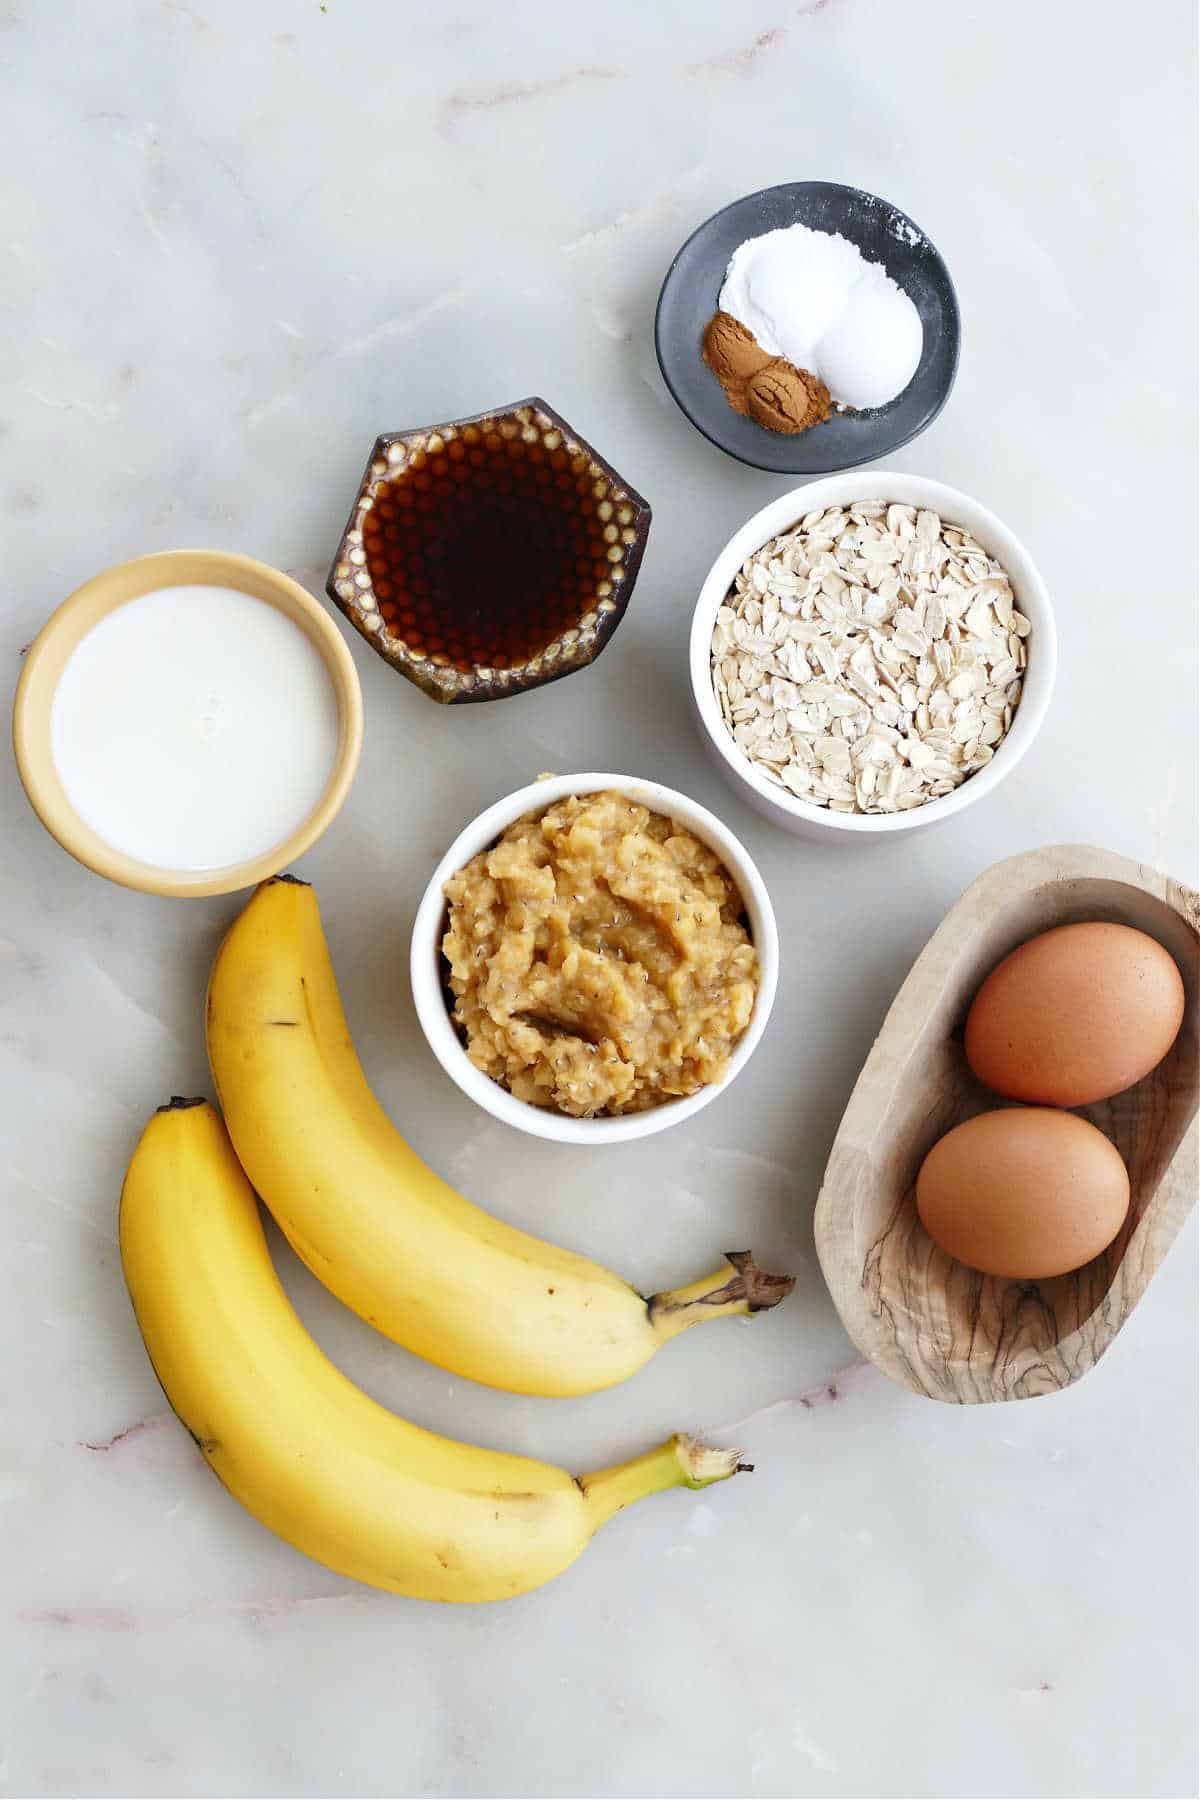 Ingredients needed to make baked banana pancakes on a sheet pan.